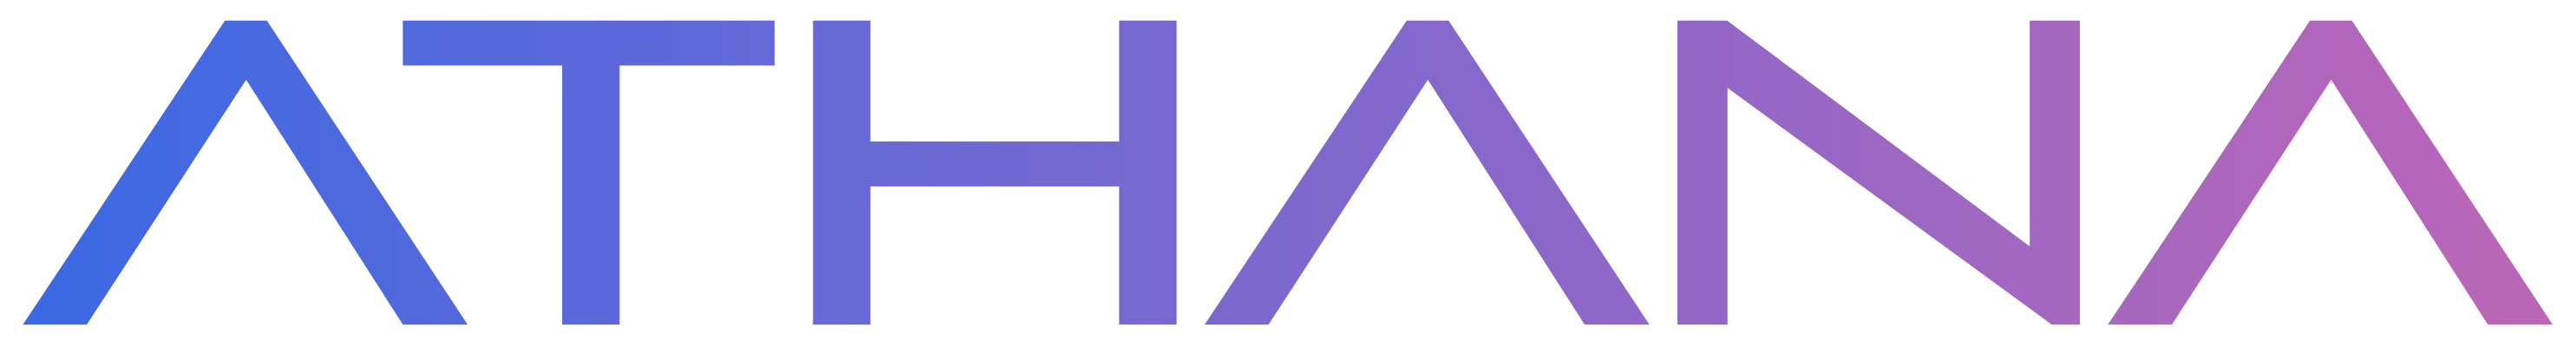 Athana logo